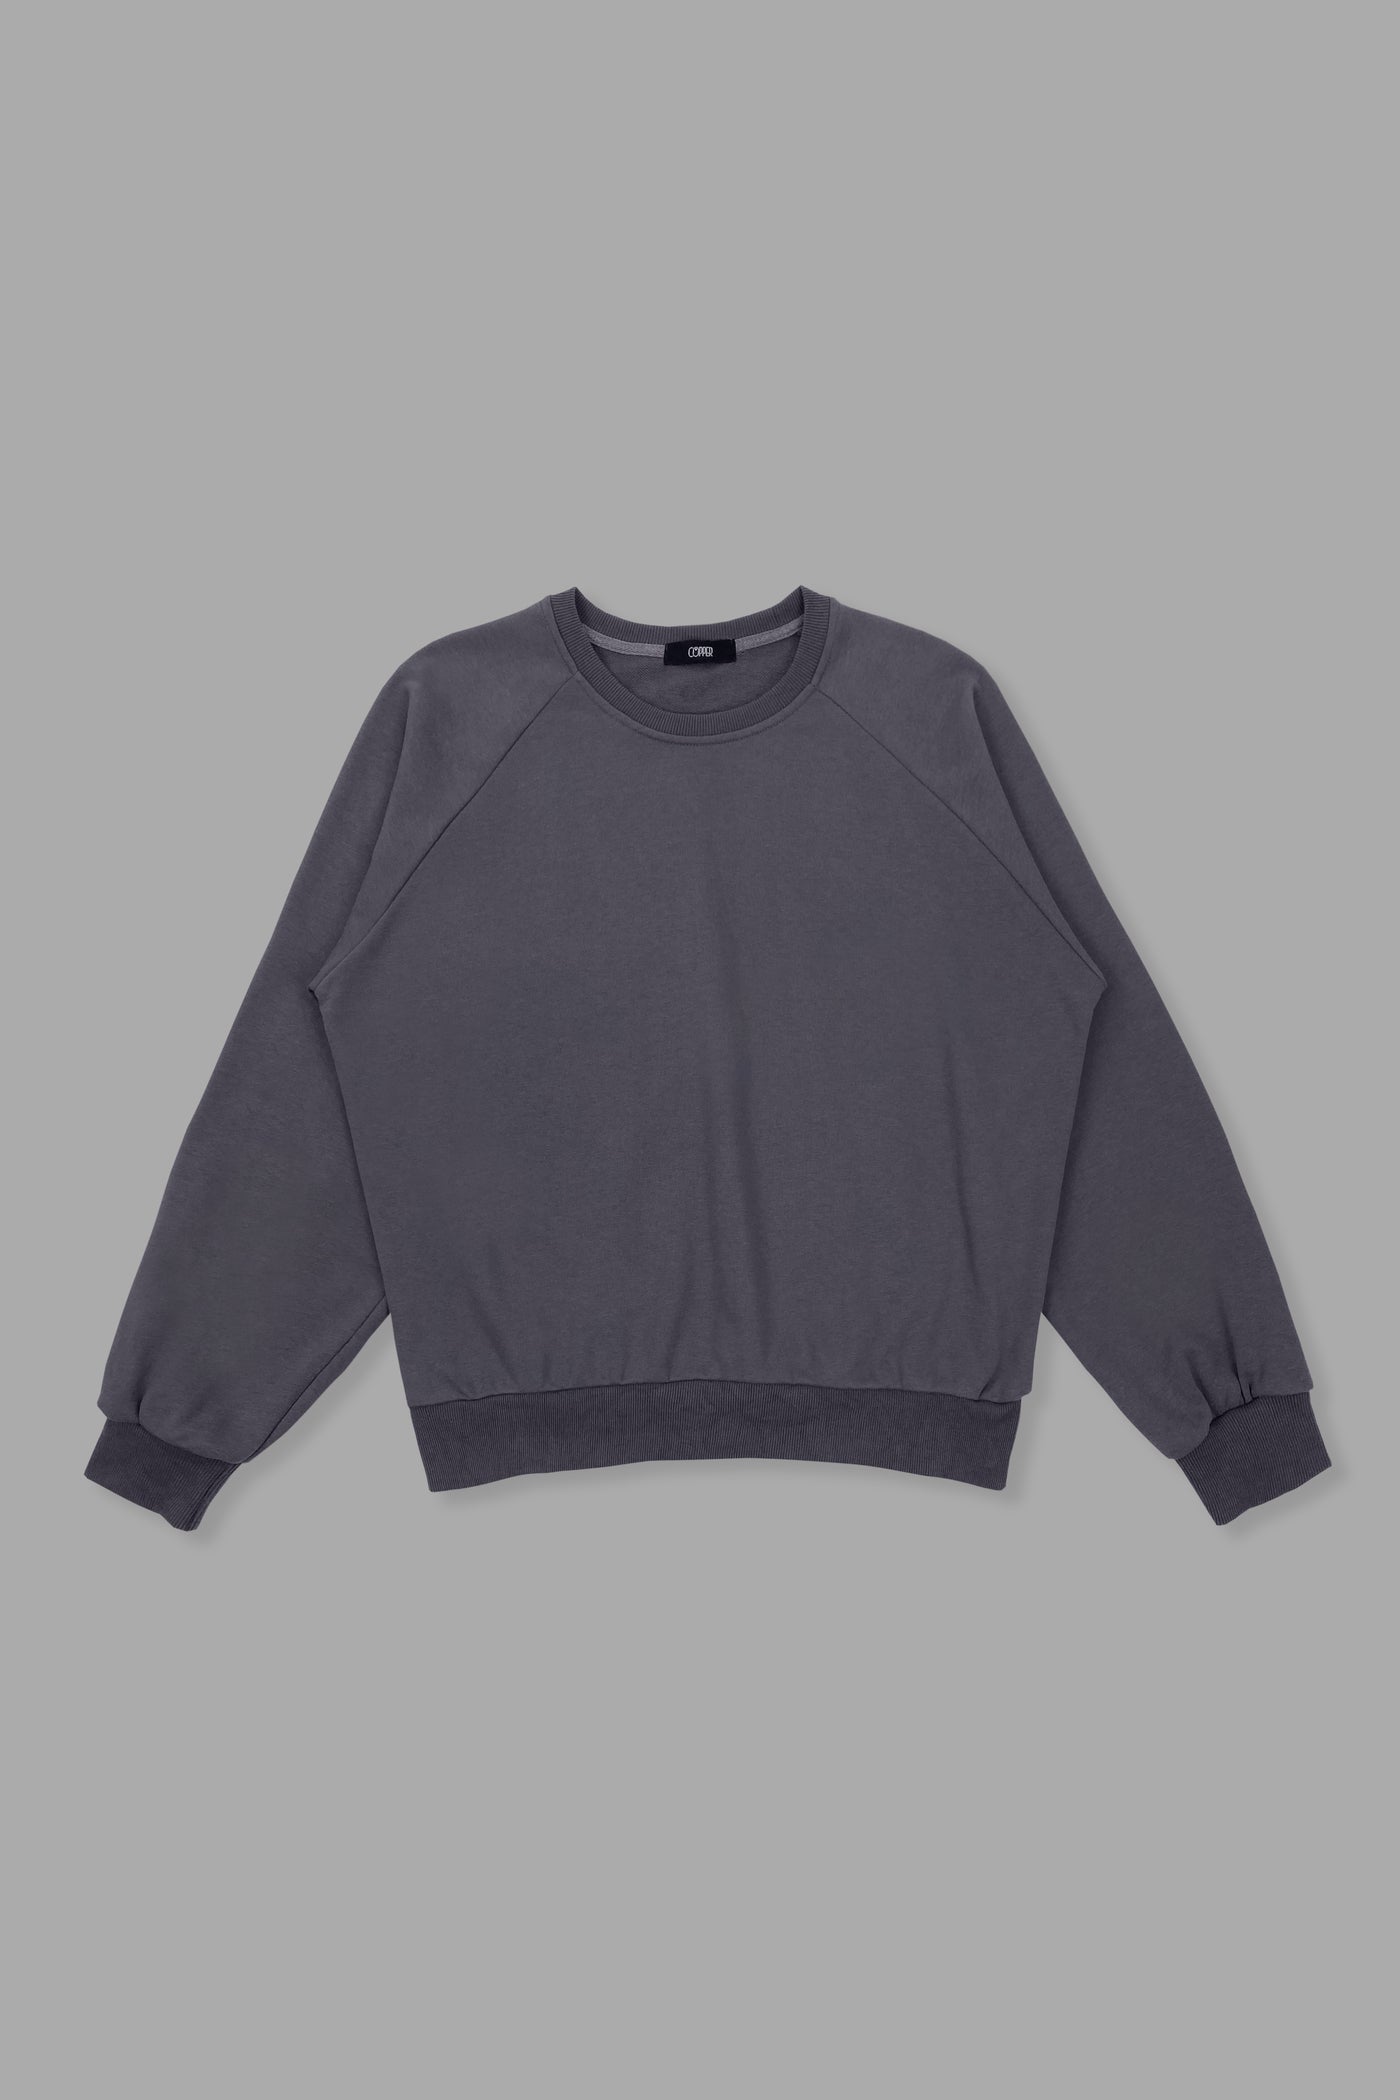 [EVERYDAY] On Repeat Oversized Lounge Sweatshirt - Slate